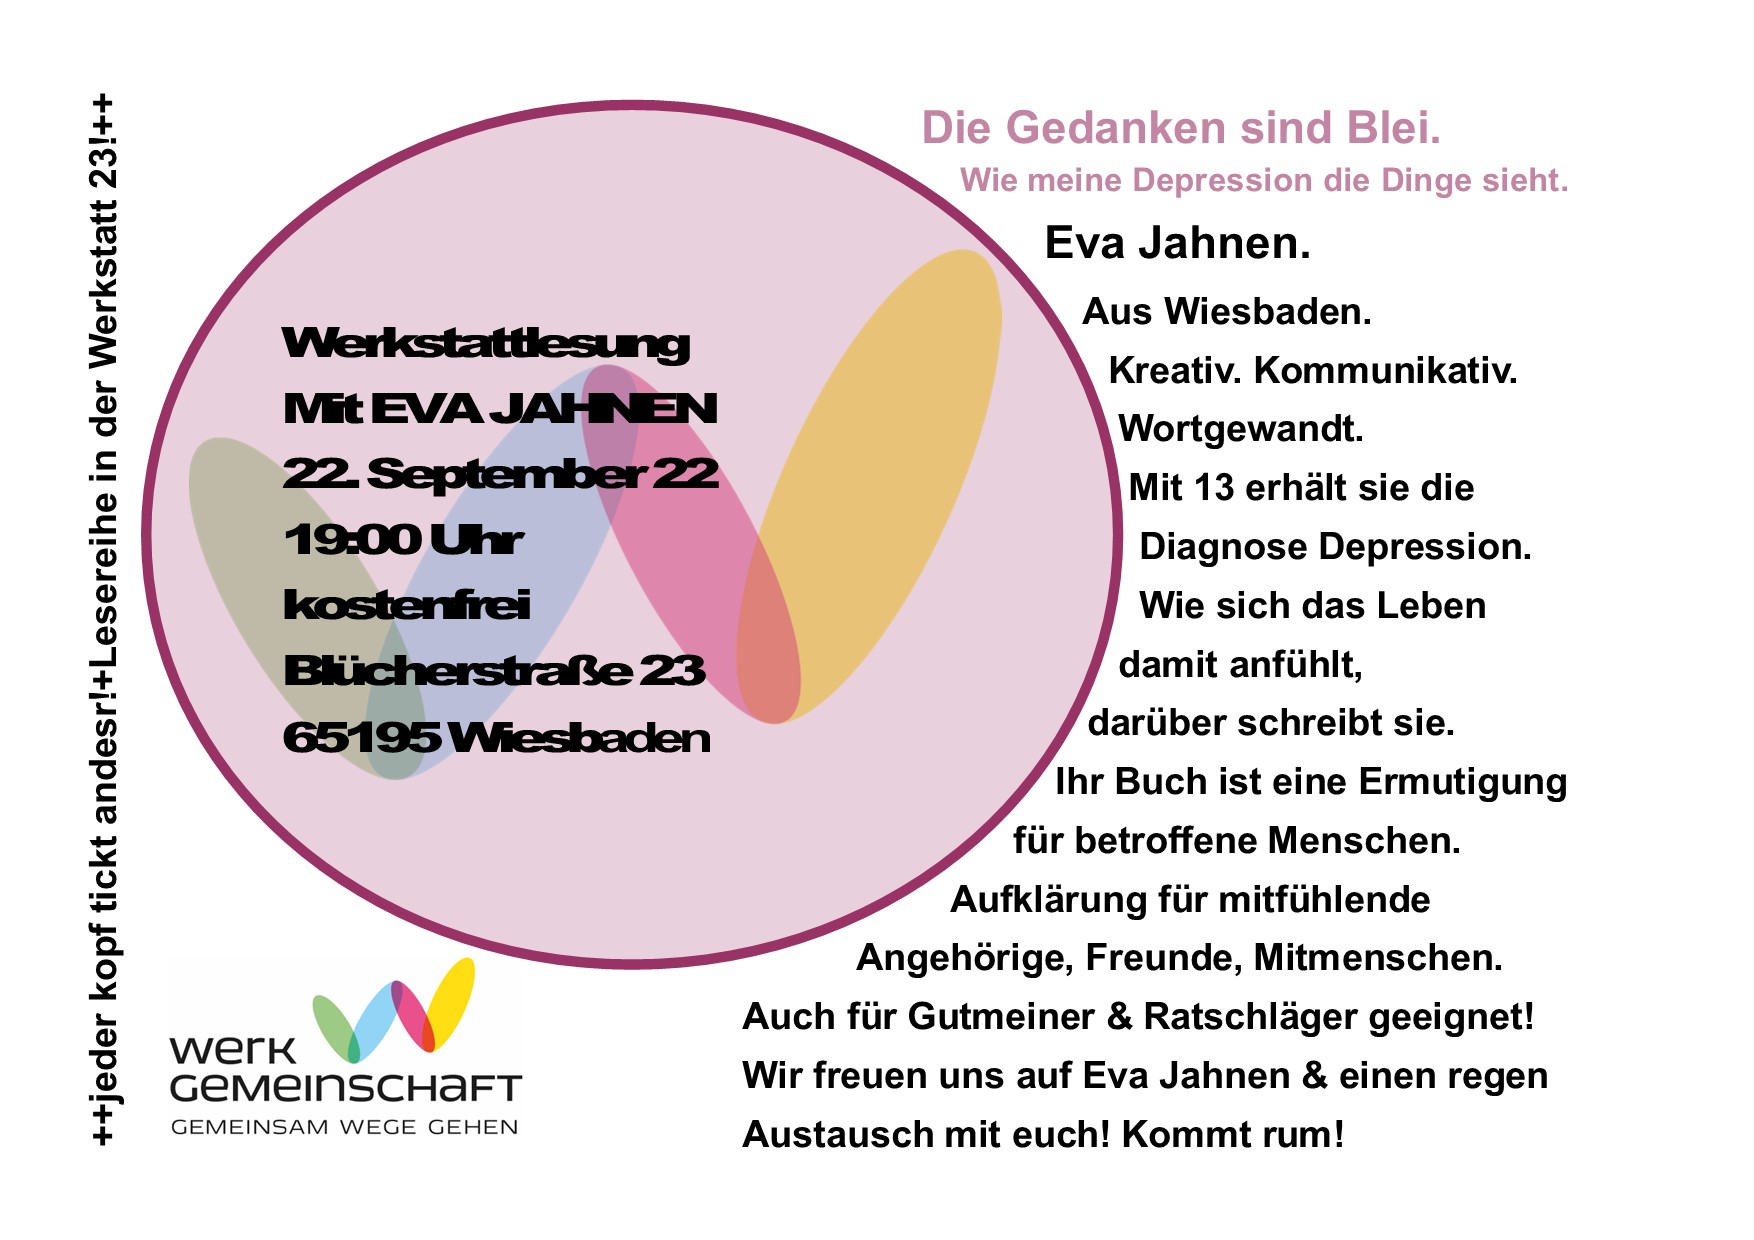 werkgemeinschaft-aktuelles- Werkstattlesung mit Eva Jahnen - Flyer